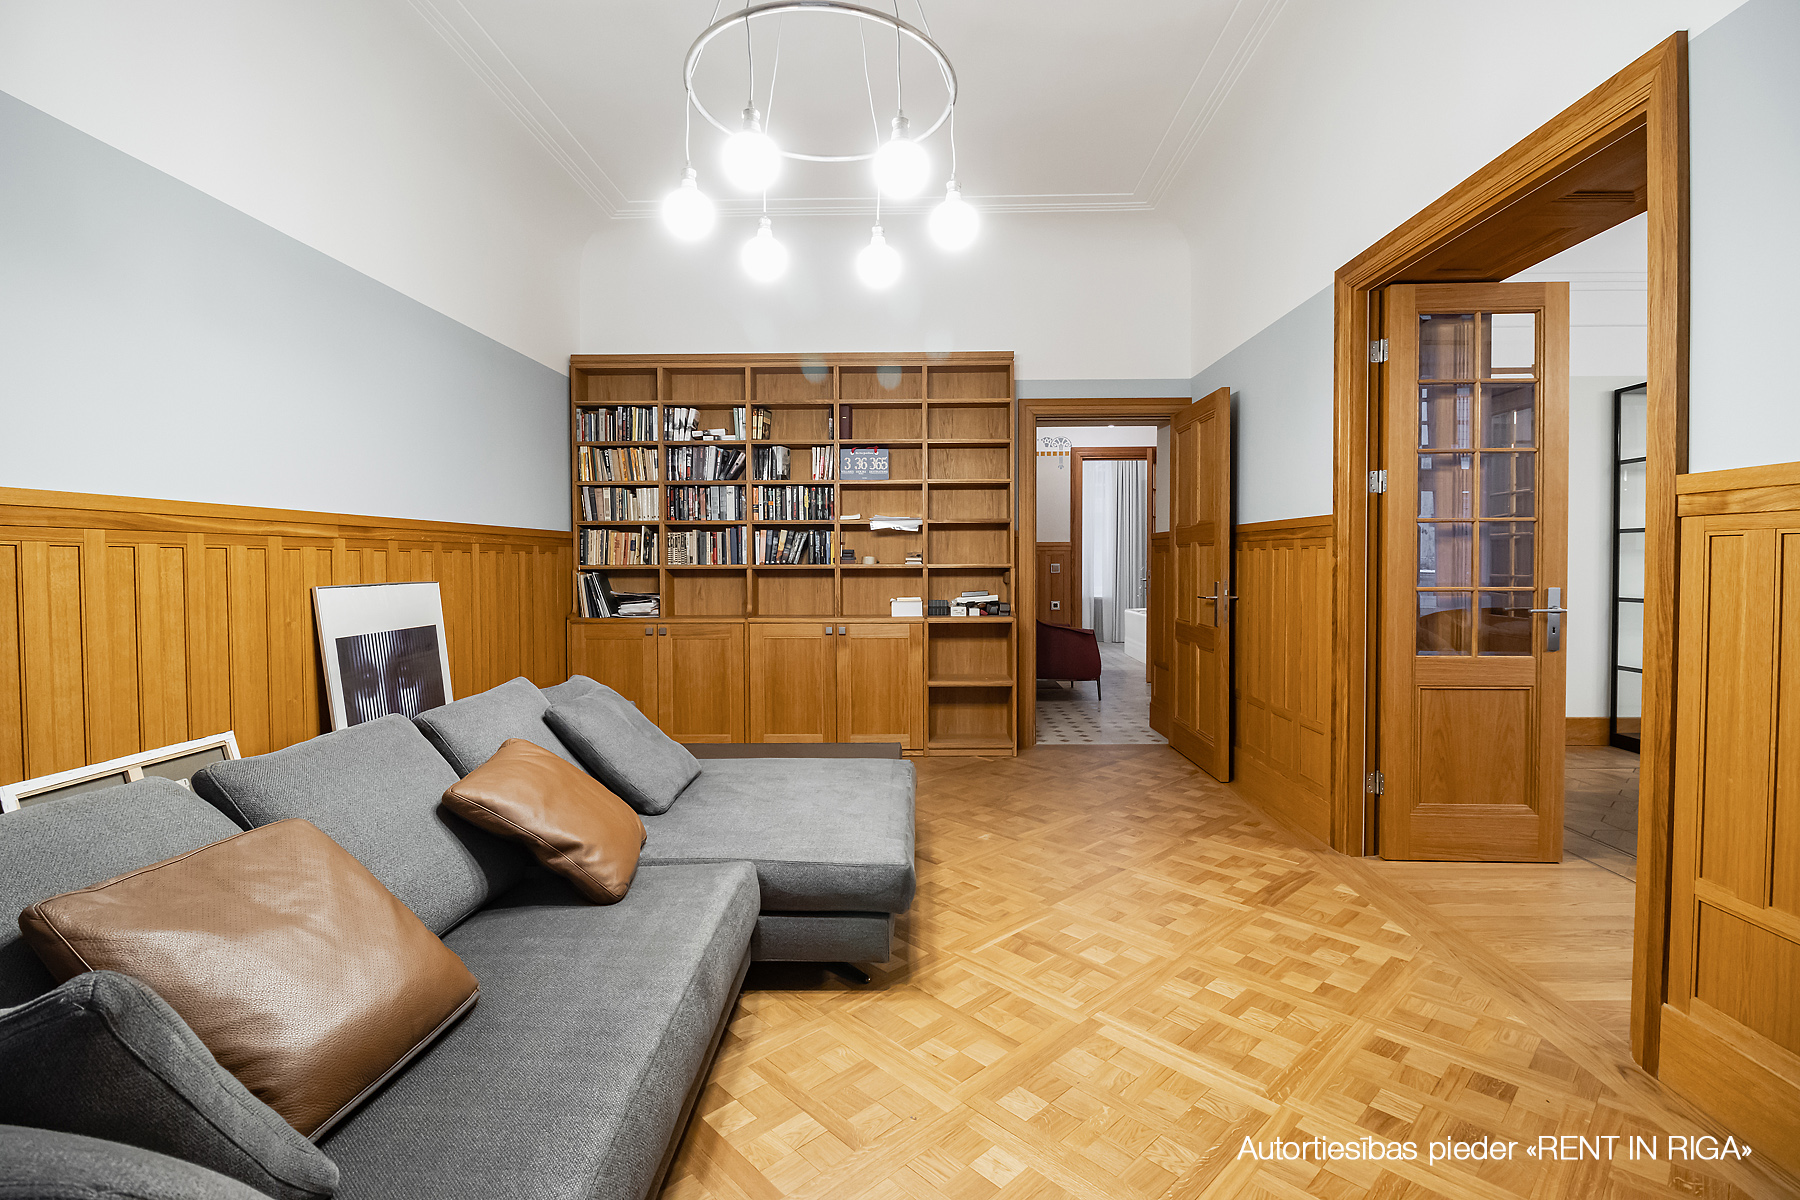 Apartment for rent, Andreja Pumpura street 5 - Image 1